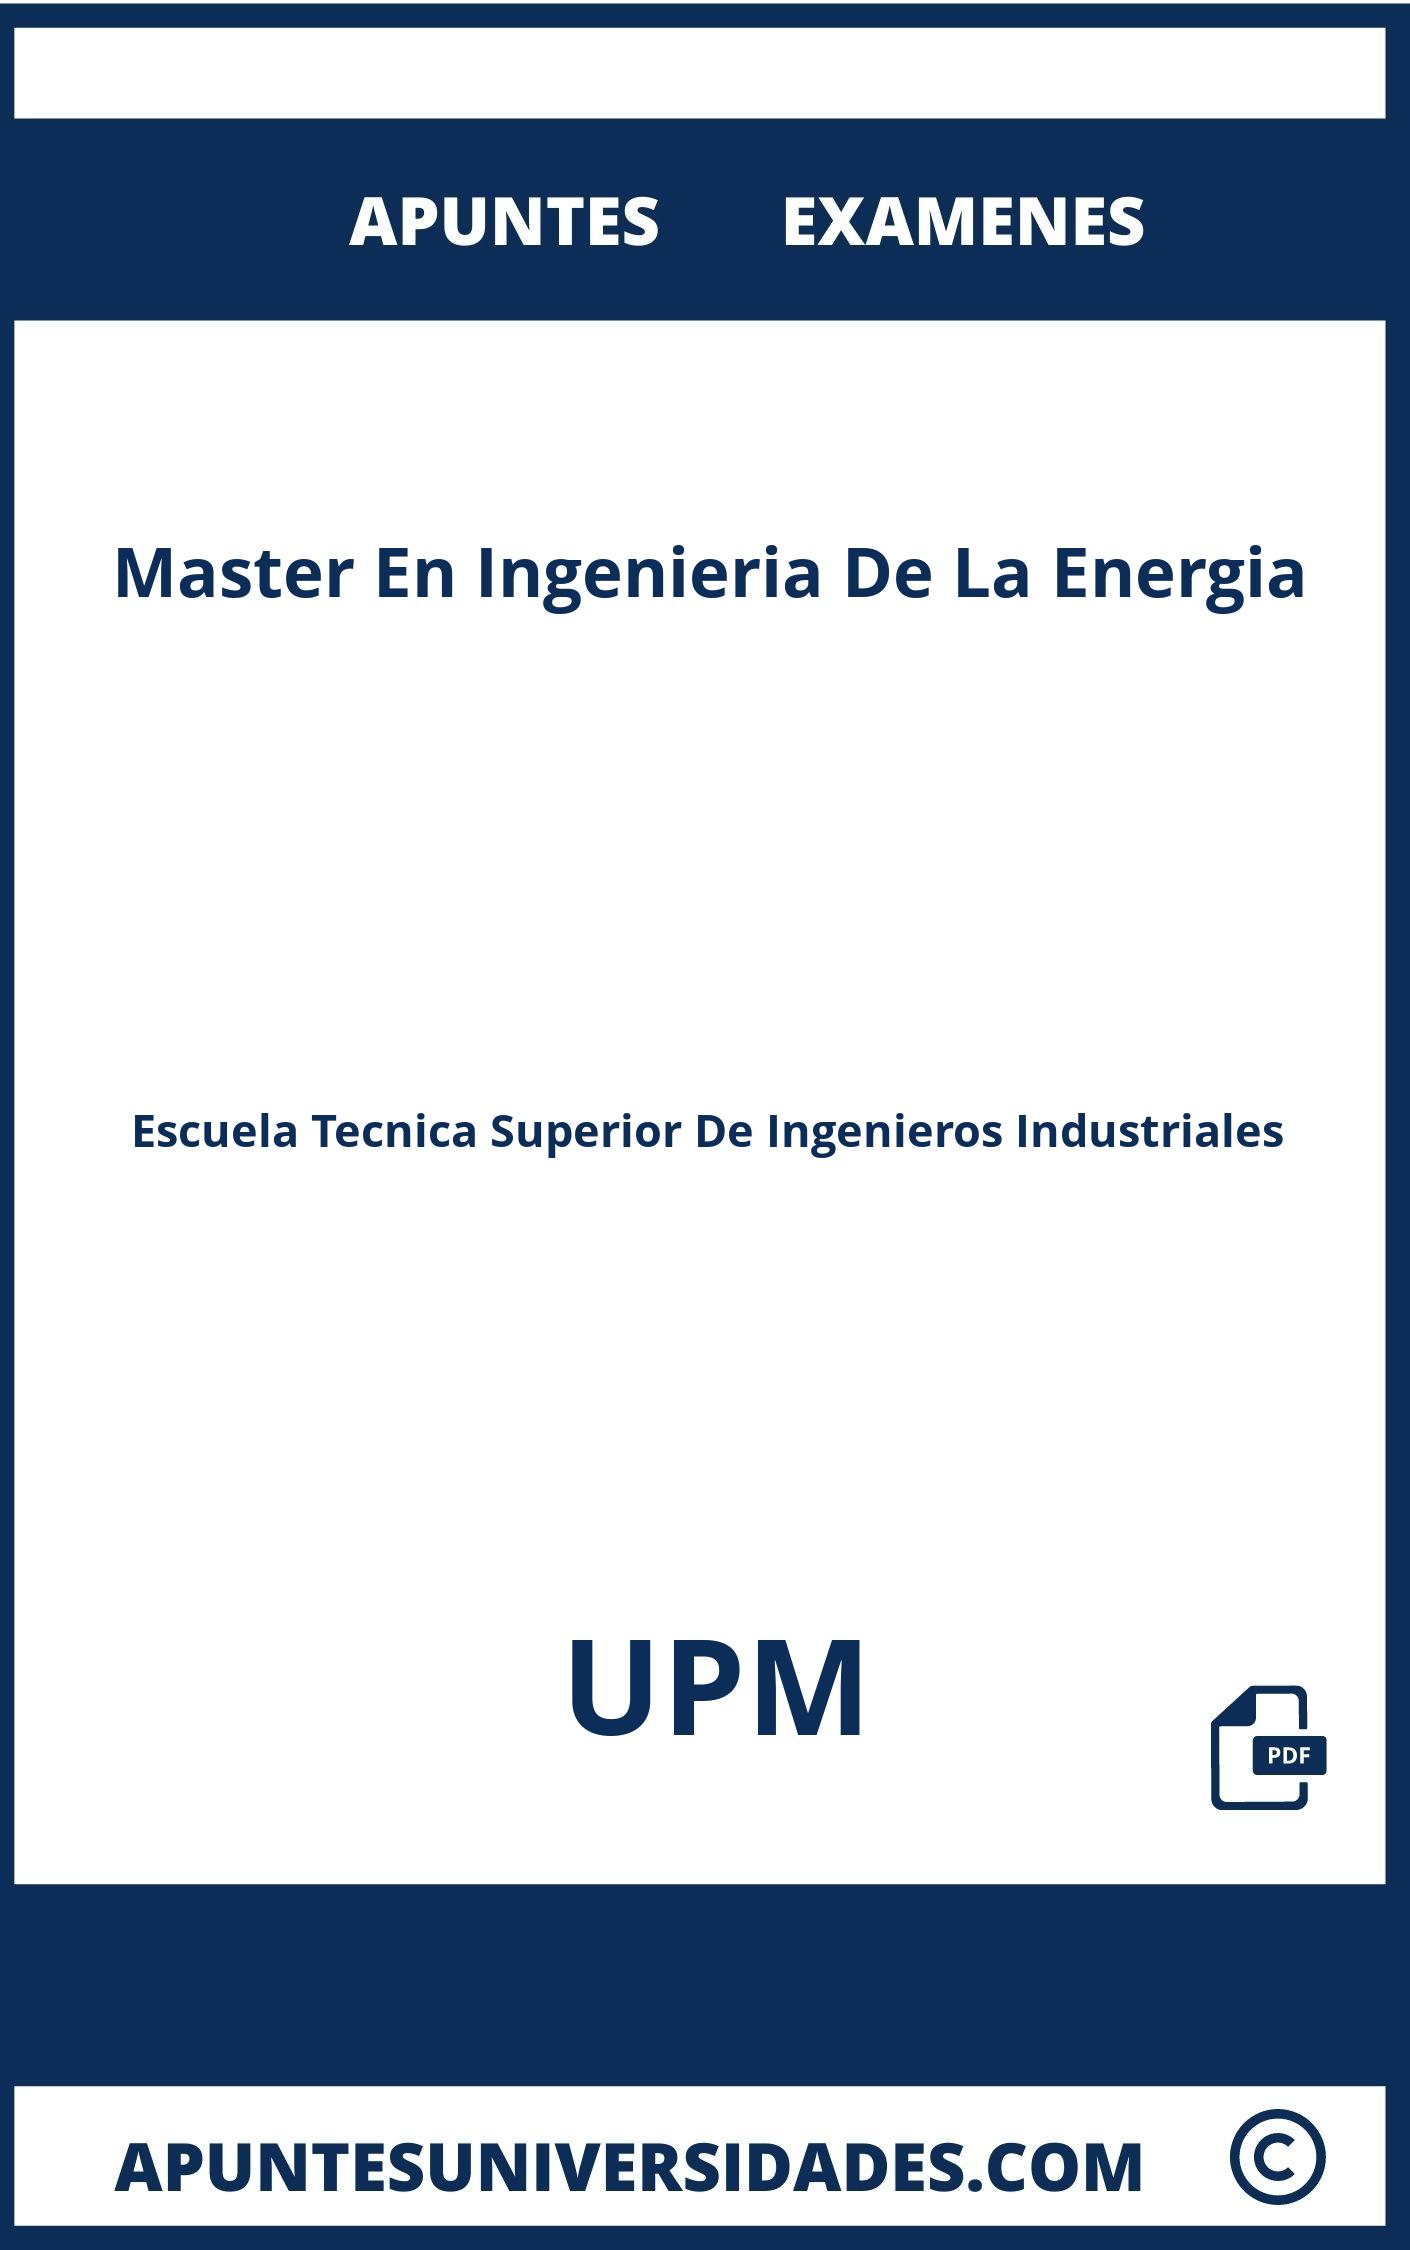 Apuntes y Examenes de Master En Ingenieria De La Energia UPM